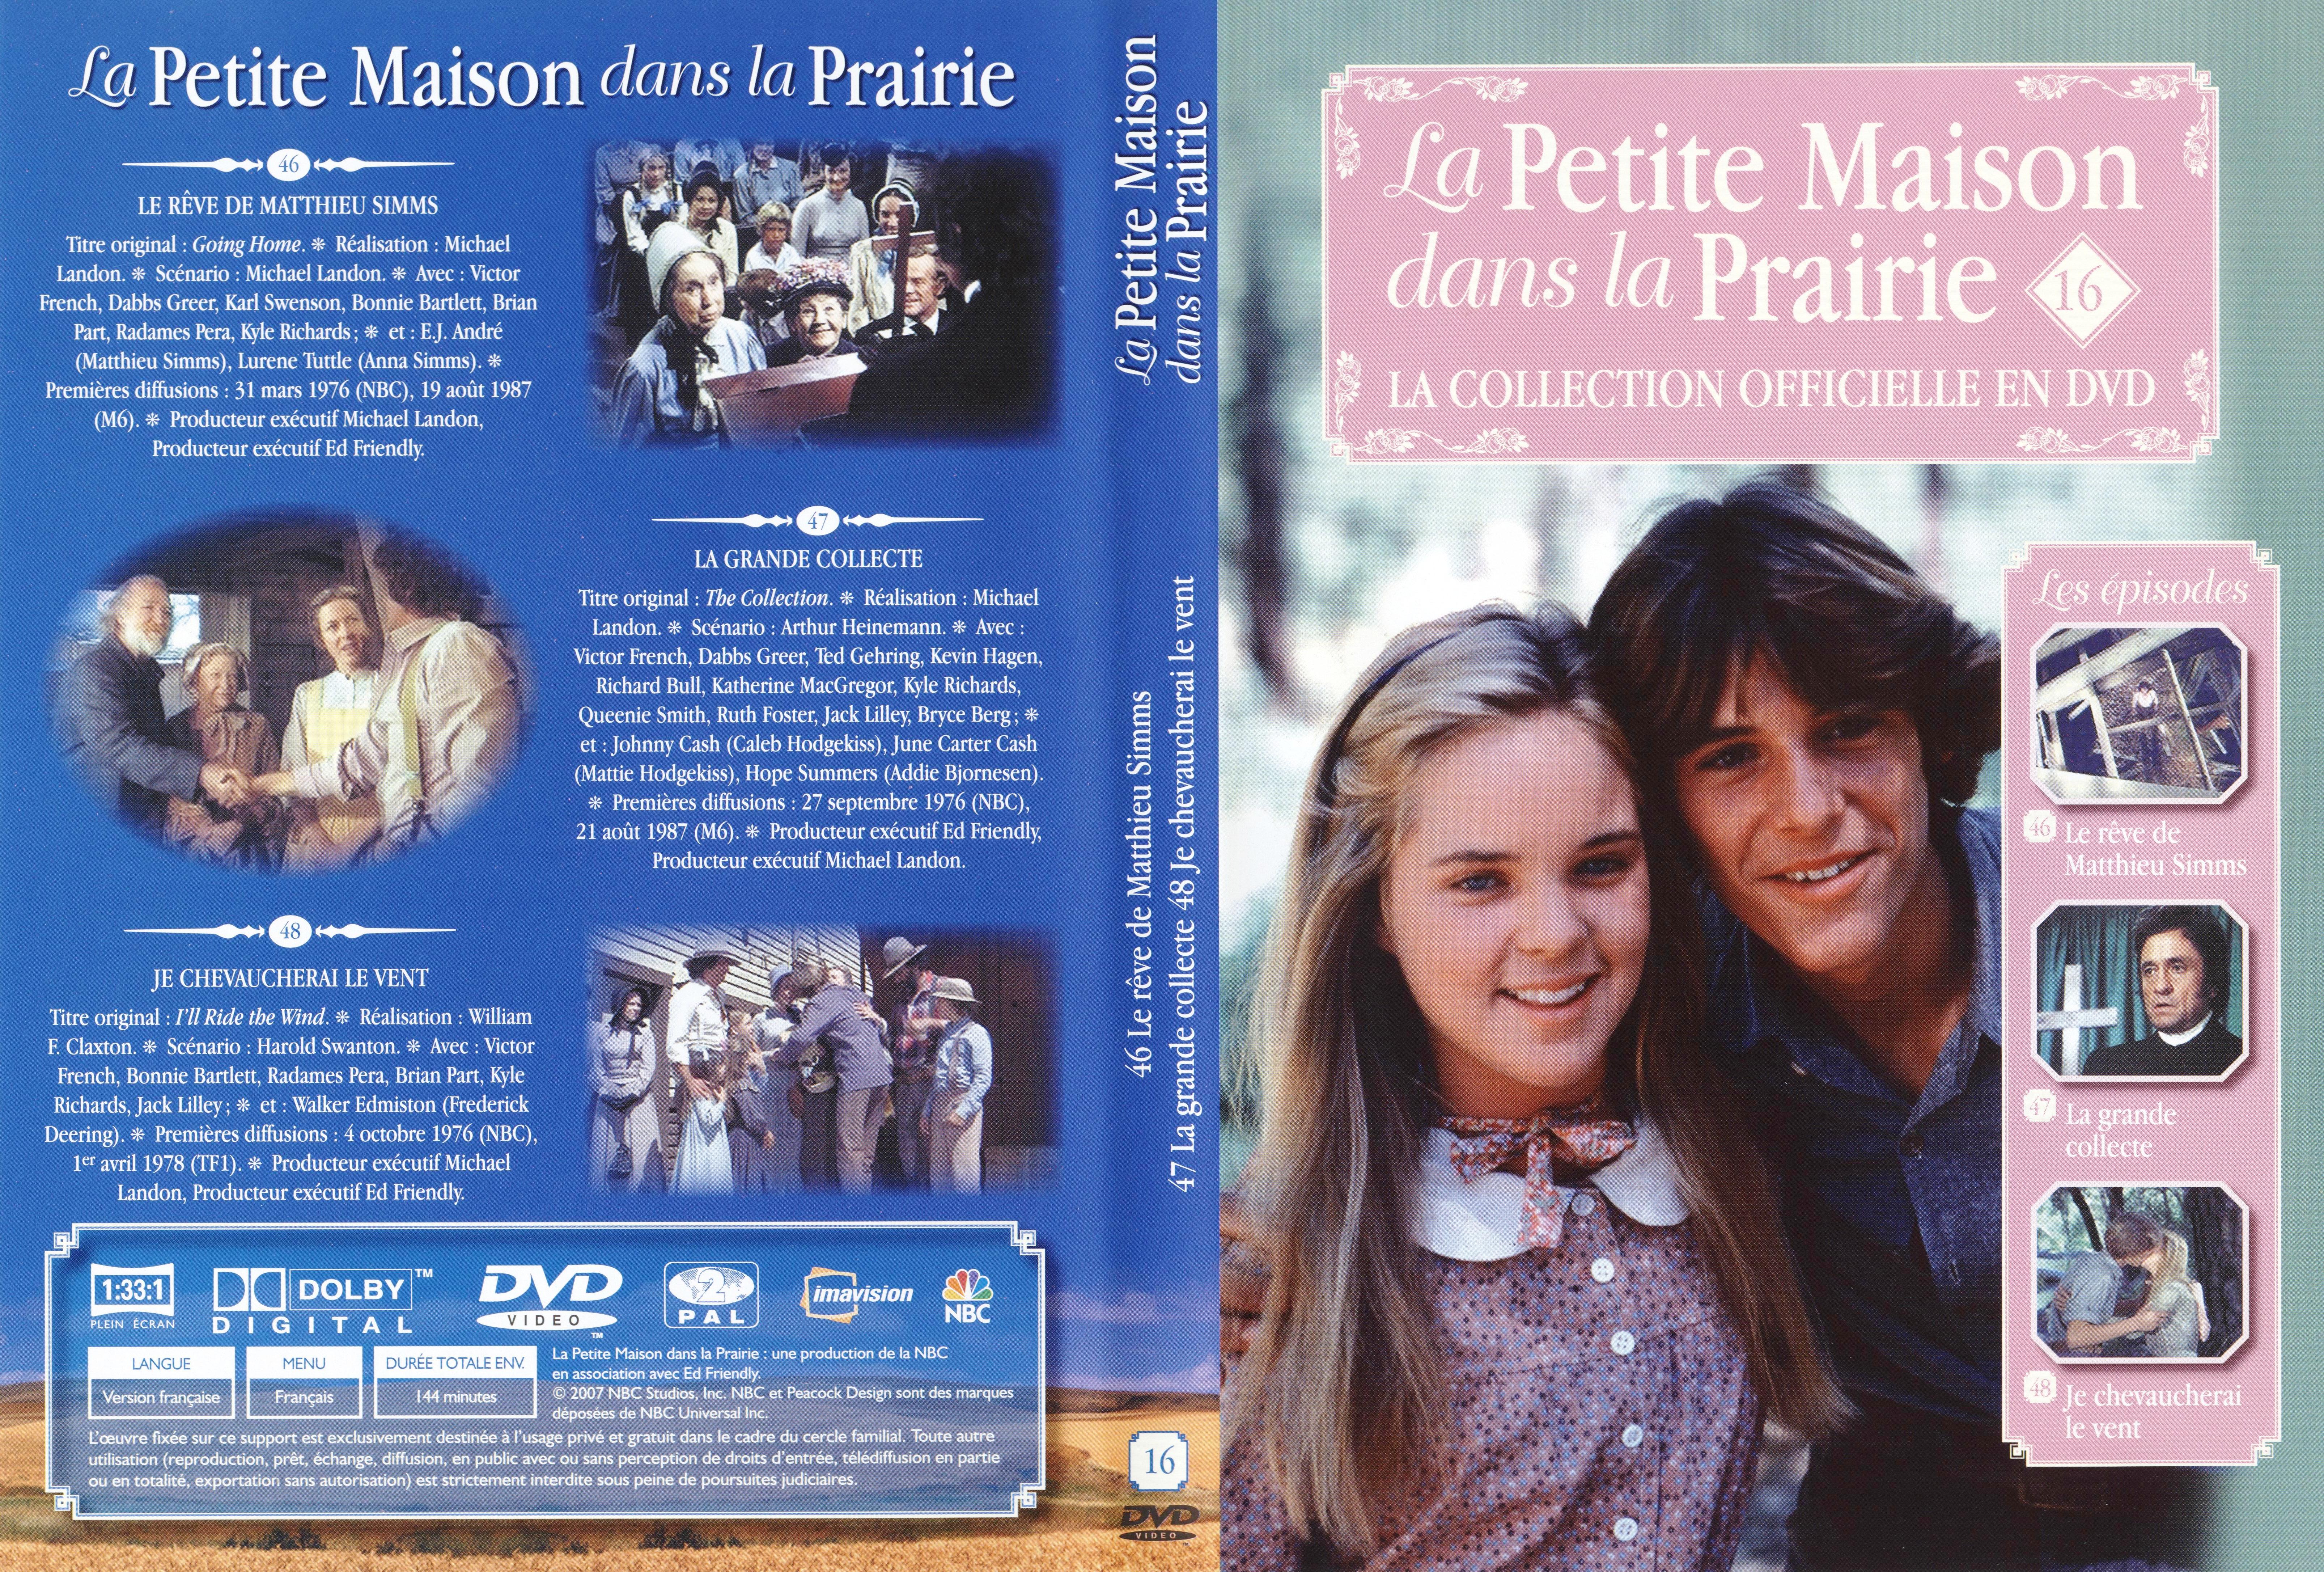 Jaquette DVD La petite maison dans la prairie La Collection vol 16